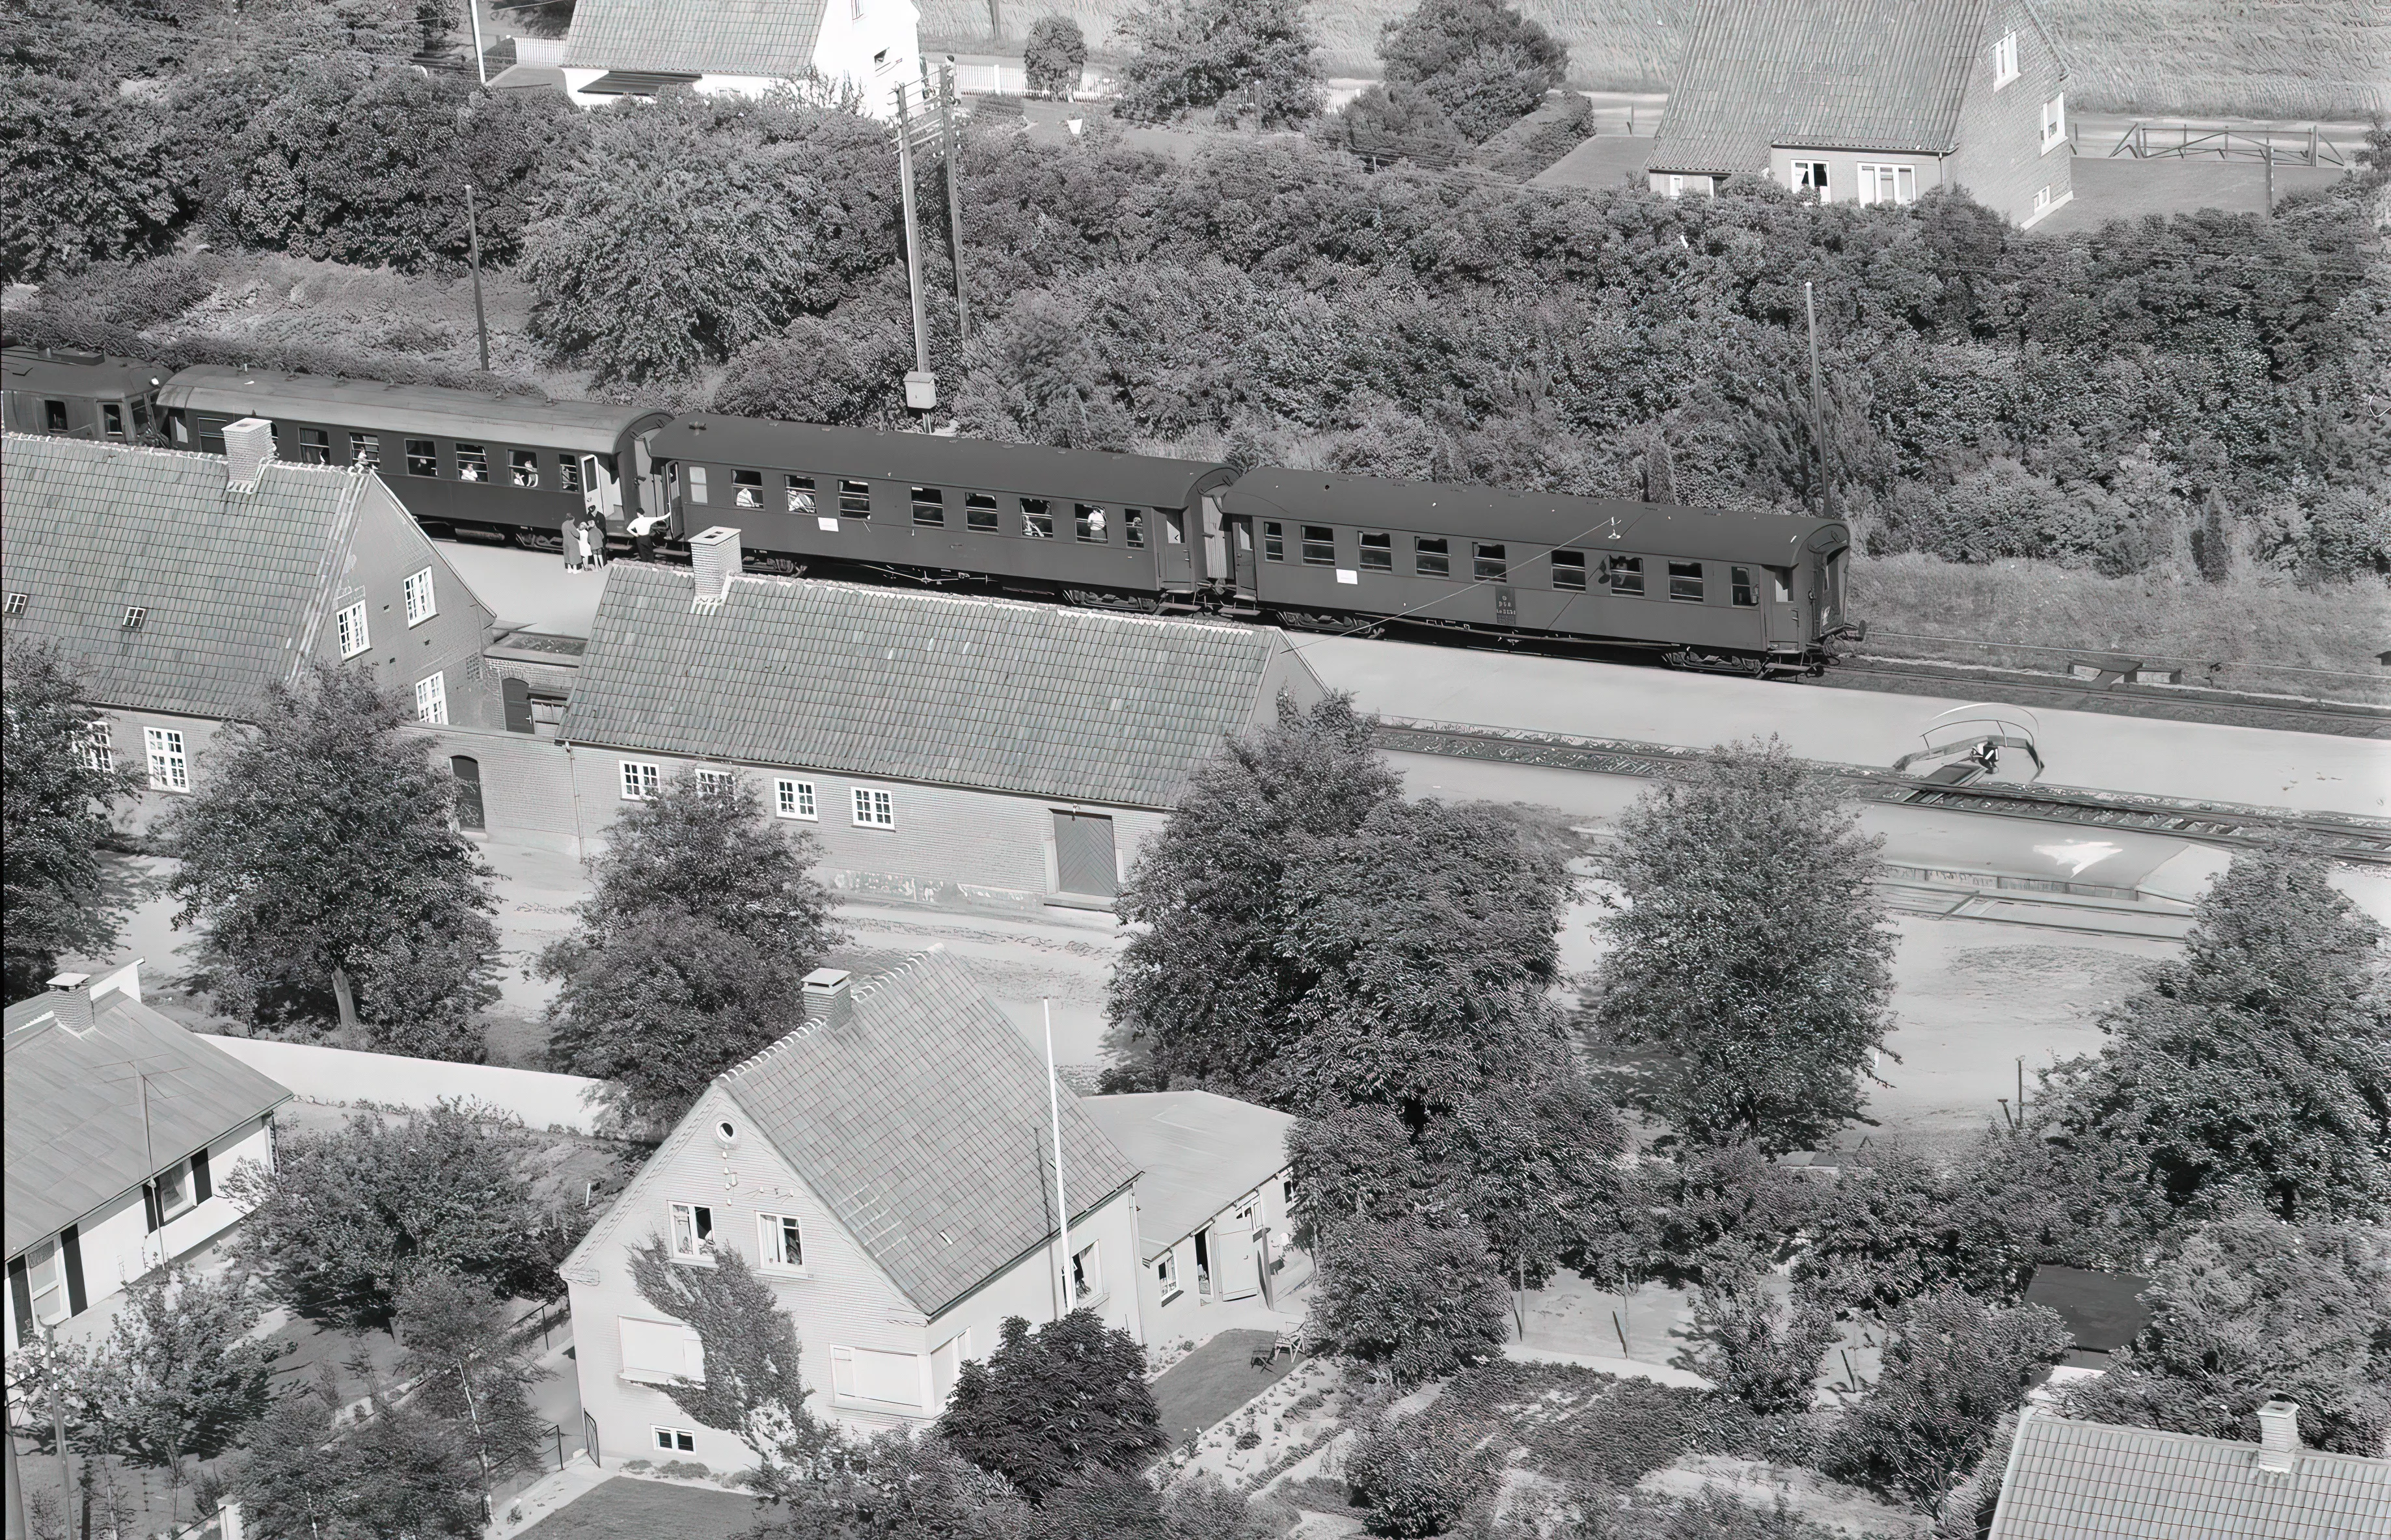 Billede af tog ud for Bråby Station.